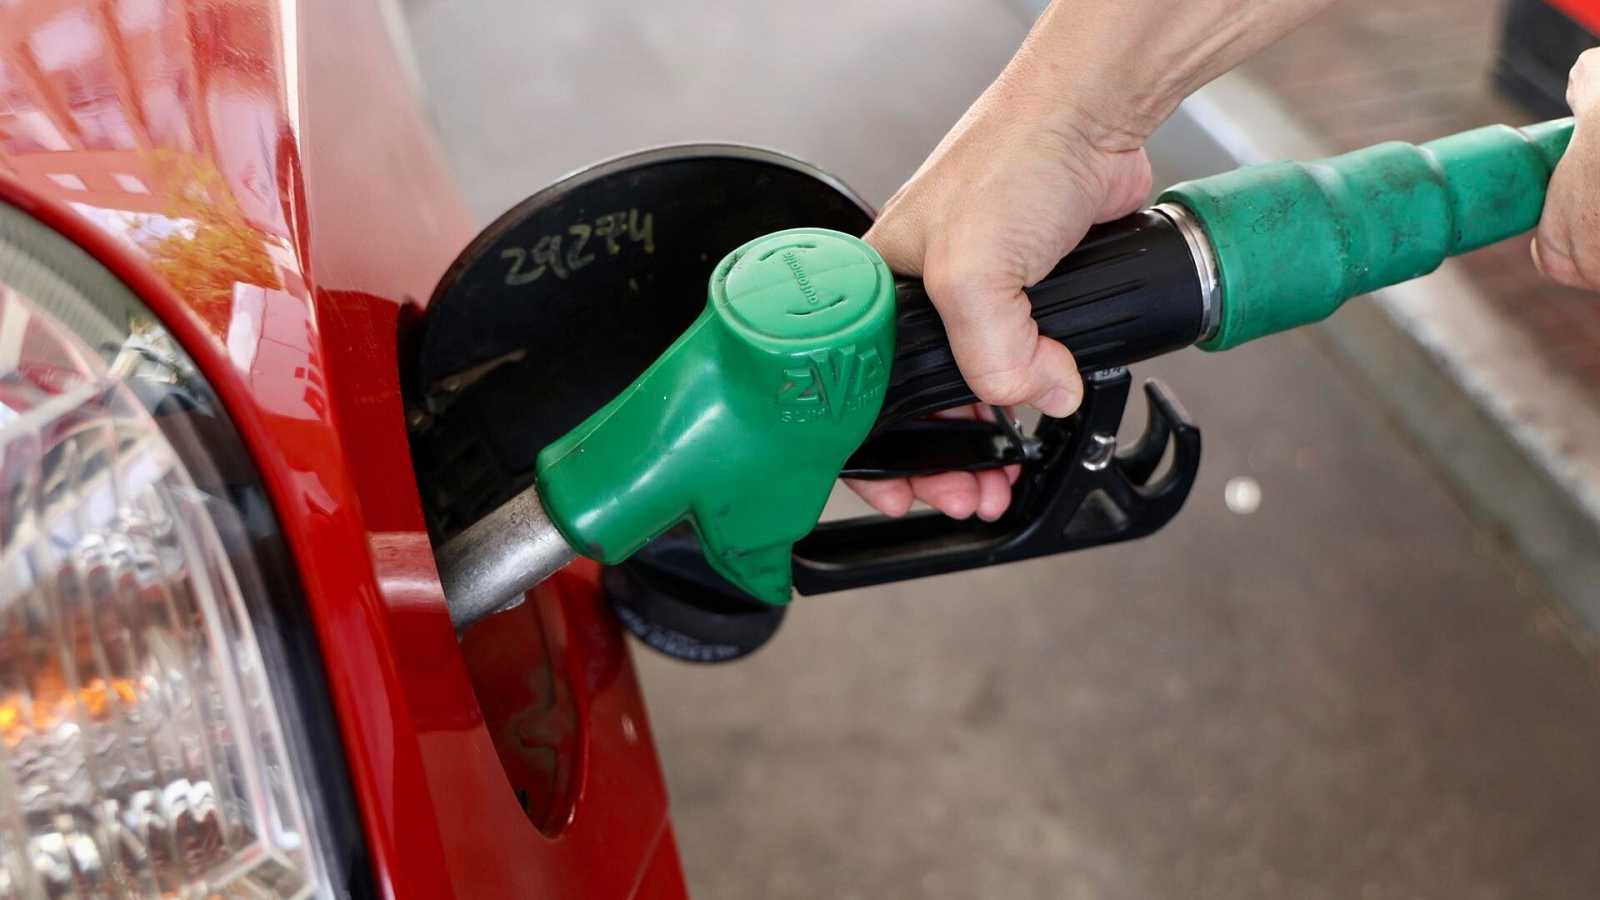 Gasolina regular tendrá rebaja de ¢13 y el diésel de ¢23: La súper experimentará aumento de ¢26